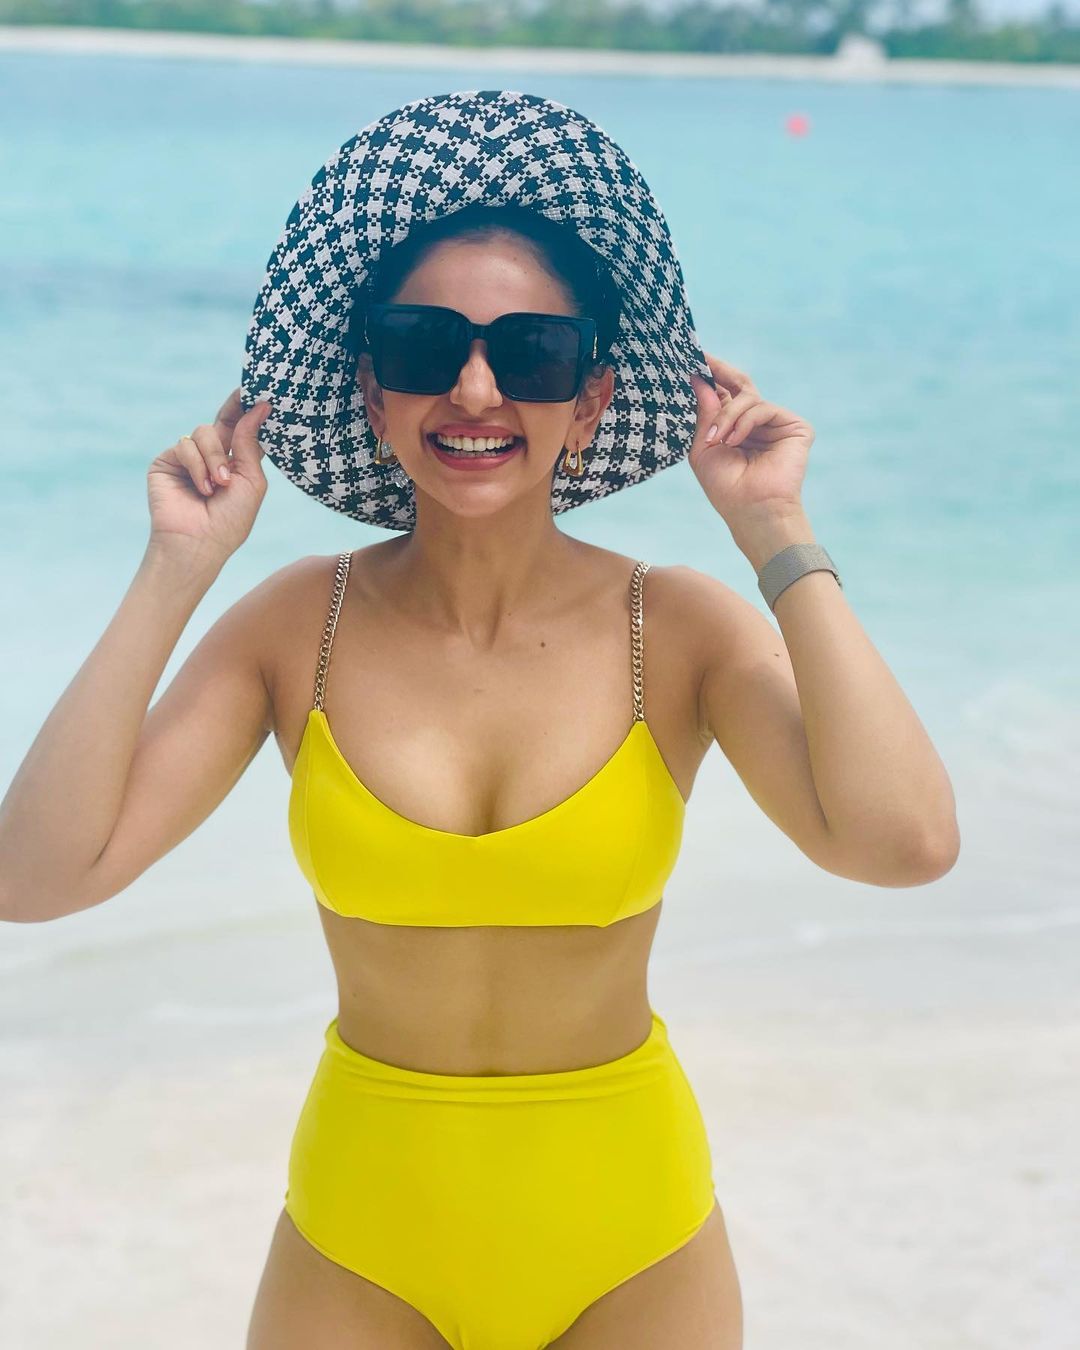 Rakul Preet Singh Teases Fans With Her Sexy Look In Yellow Bikini